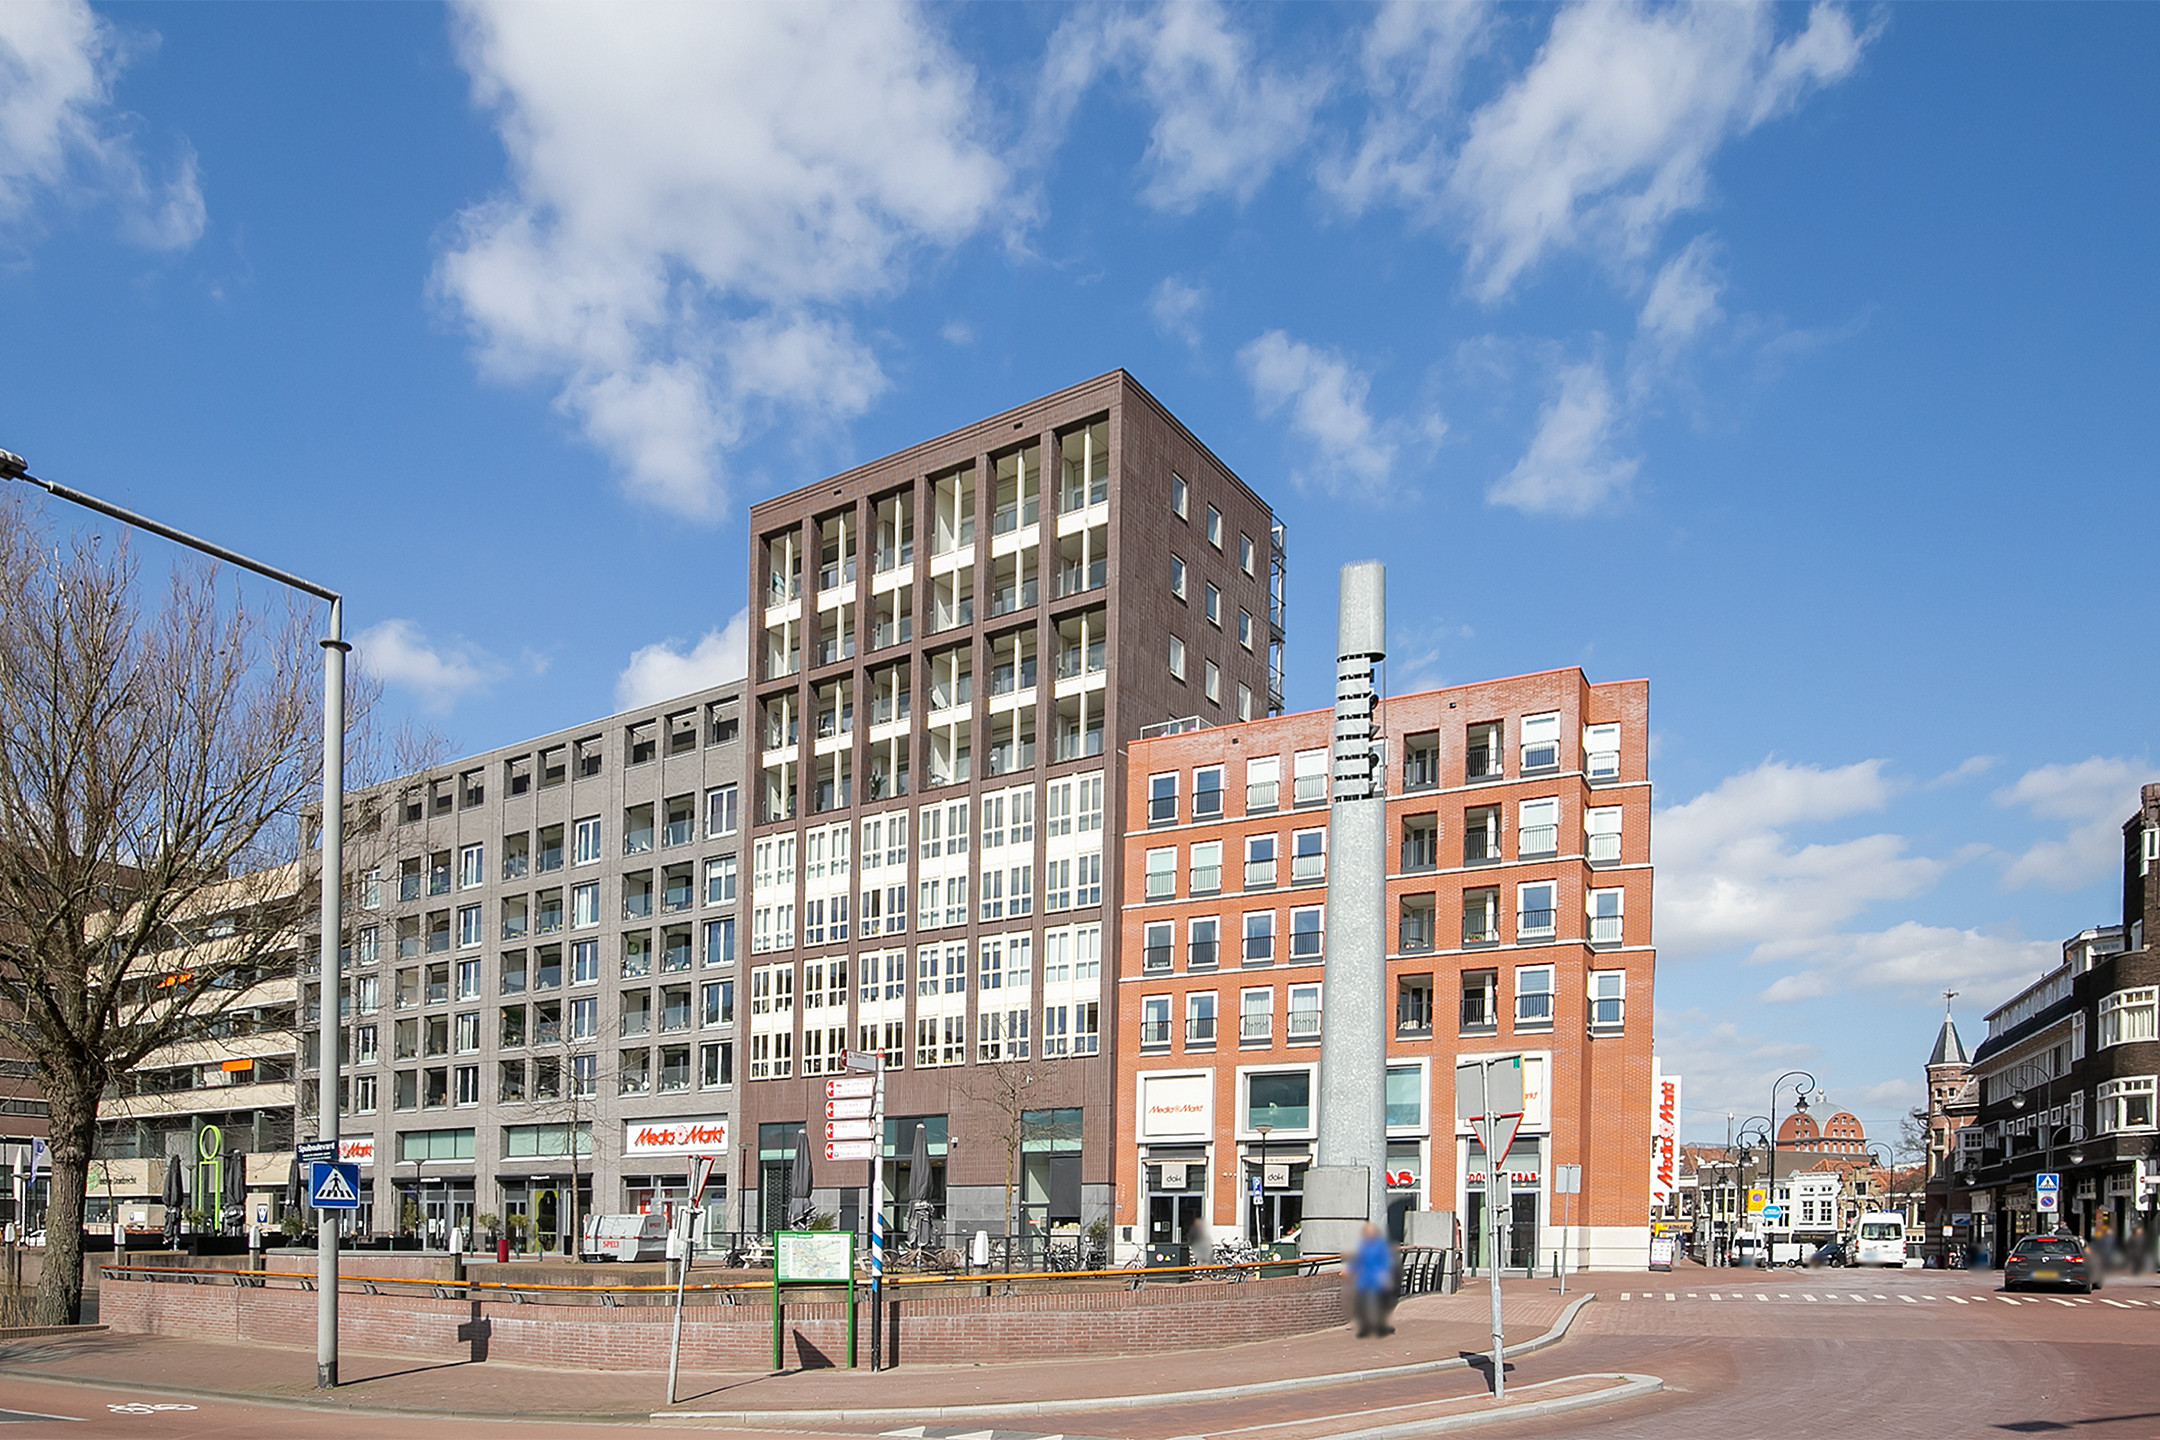 Bekijk foto 1/18 van apartment in Dordrecht